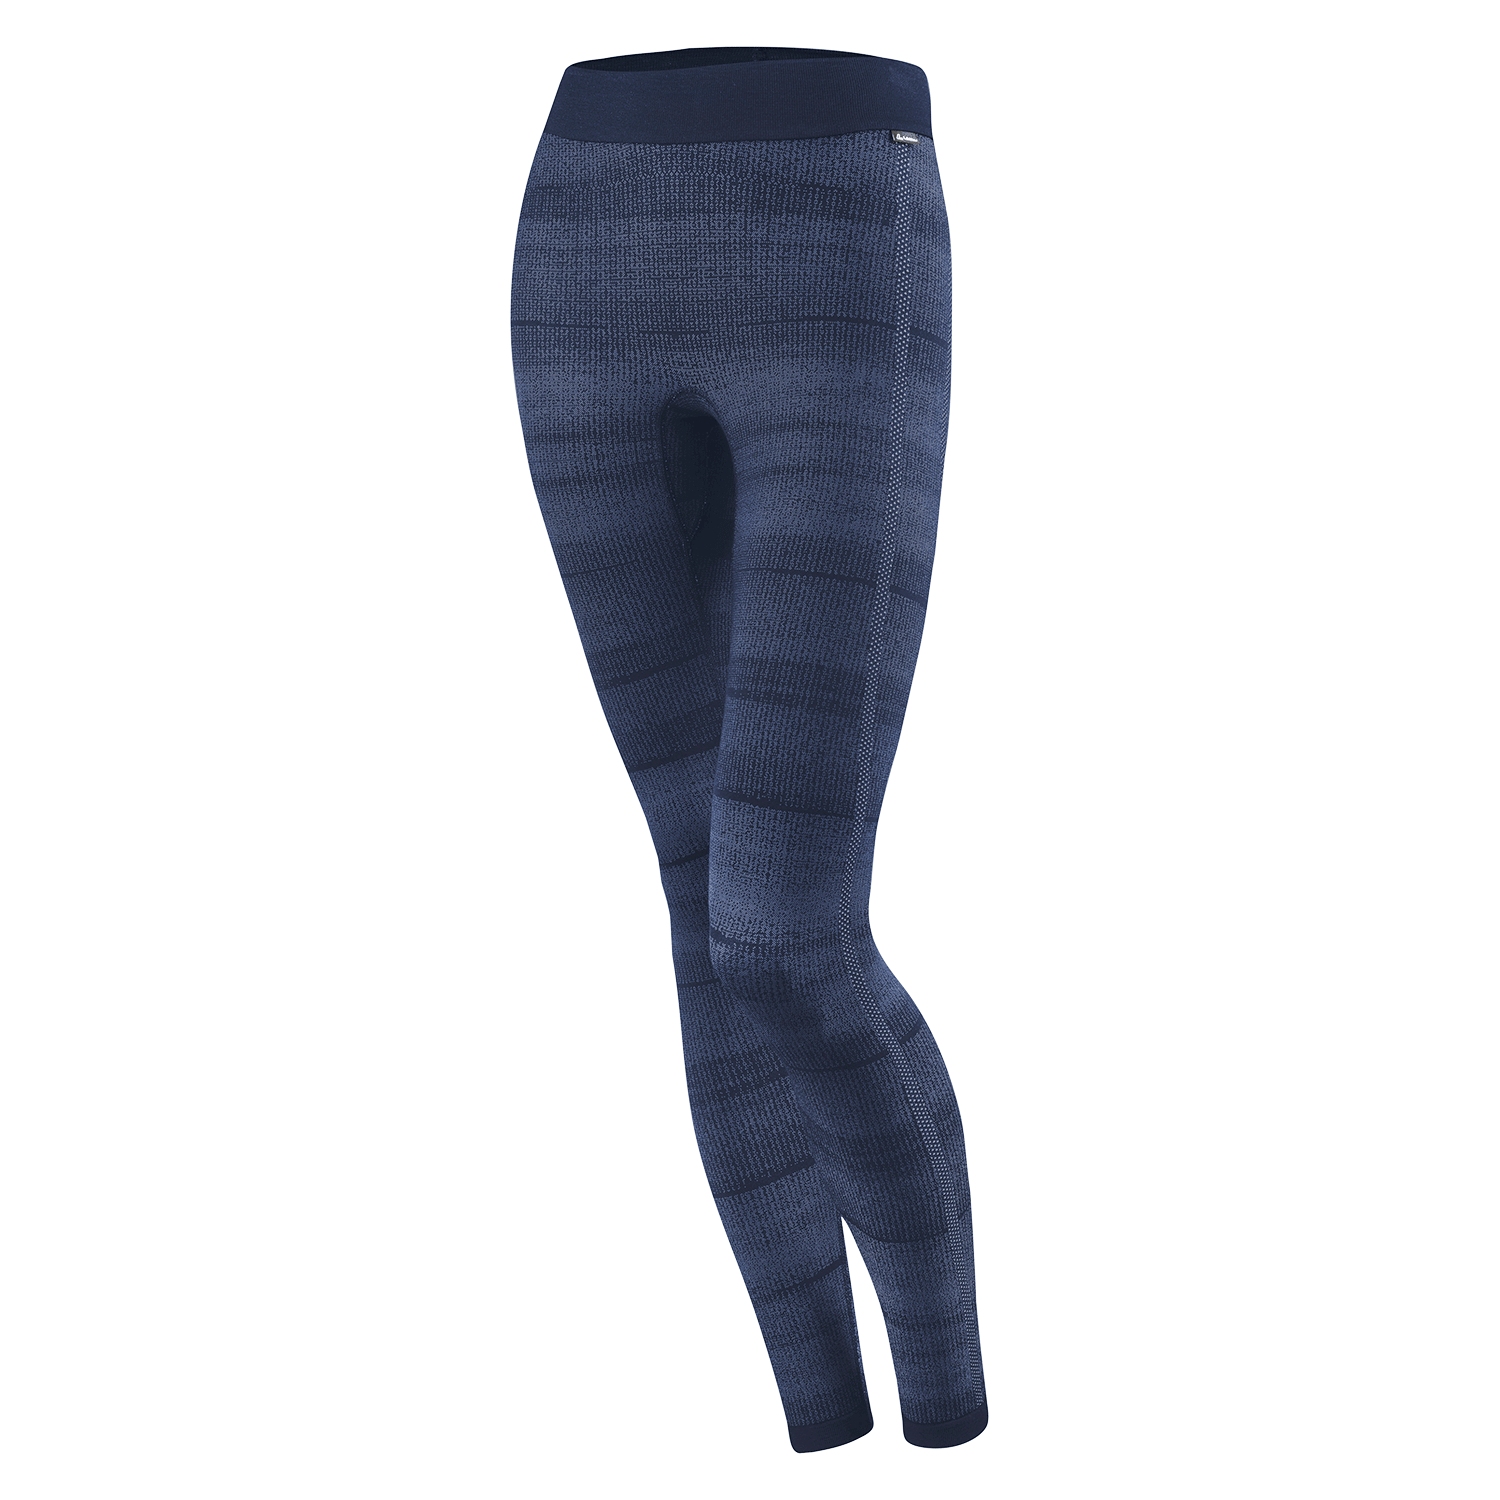 Produktbild von Löffler Transtex® Hybrid Lange Unterhose Damen - dunkelblau 495